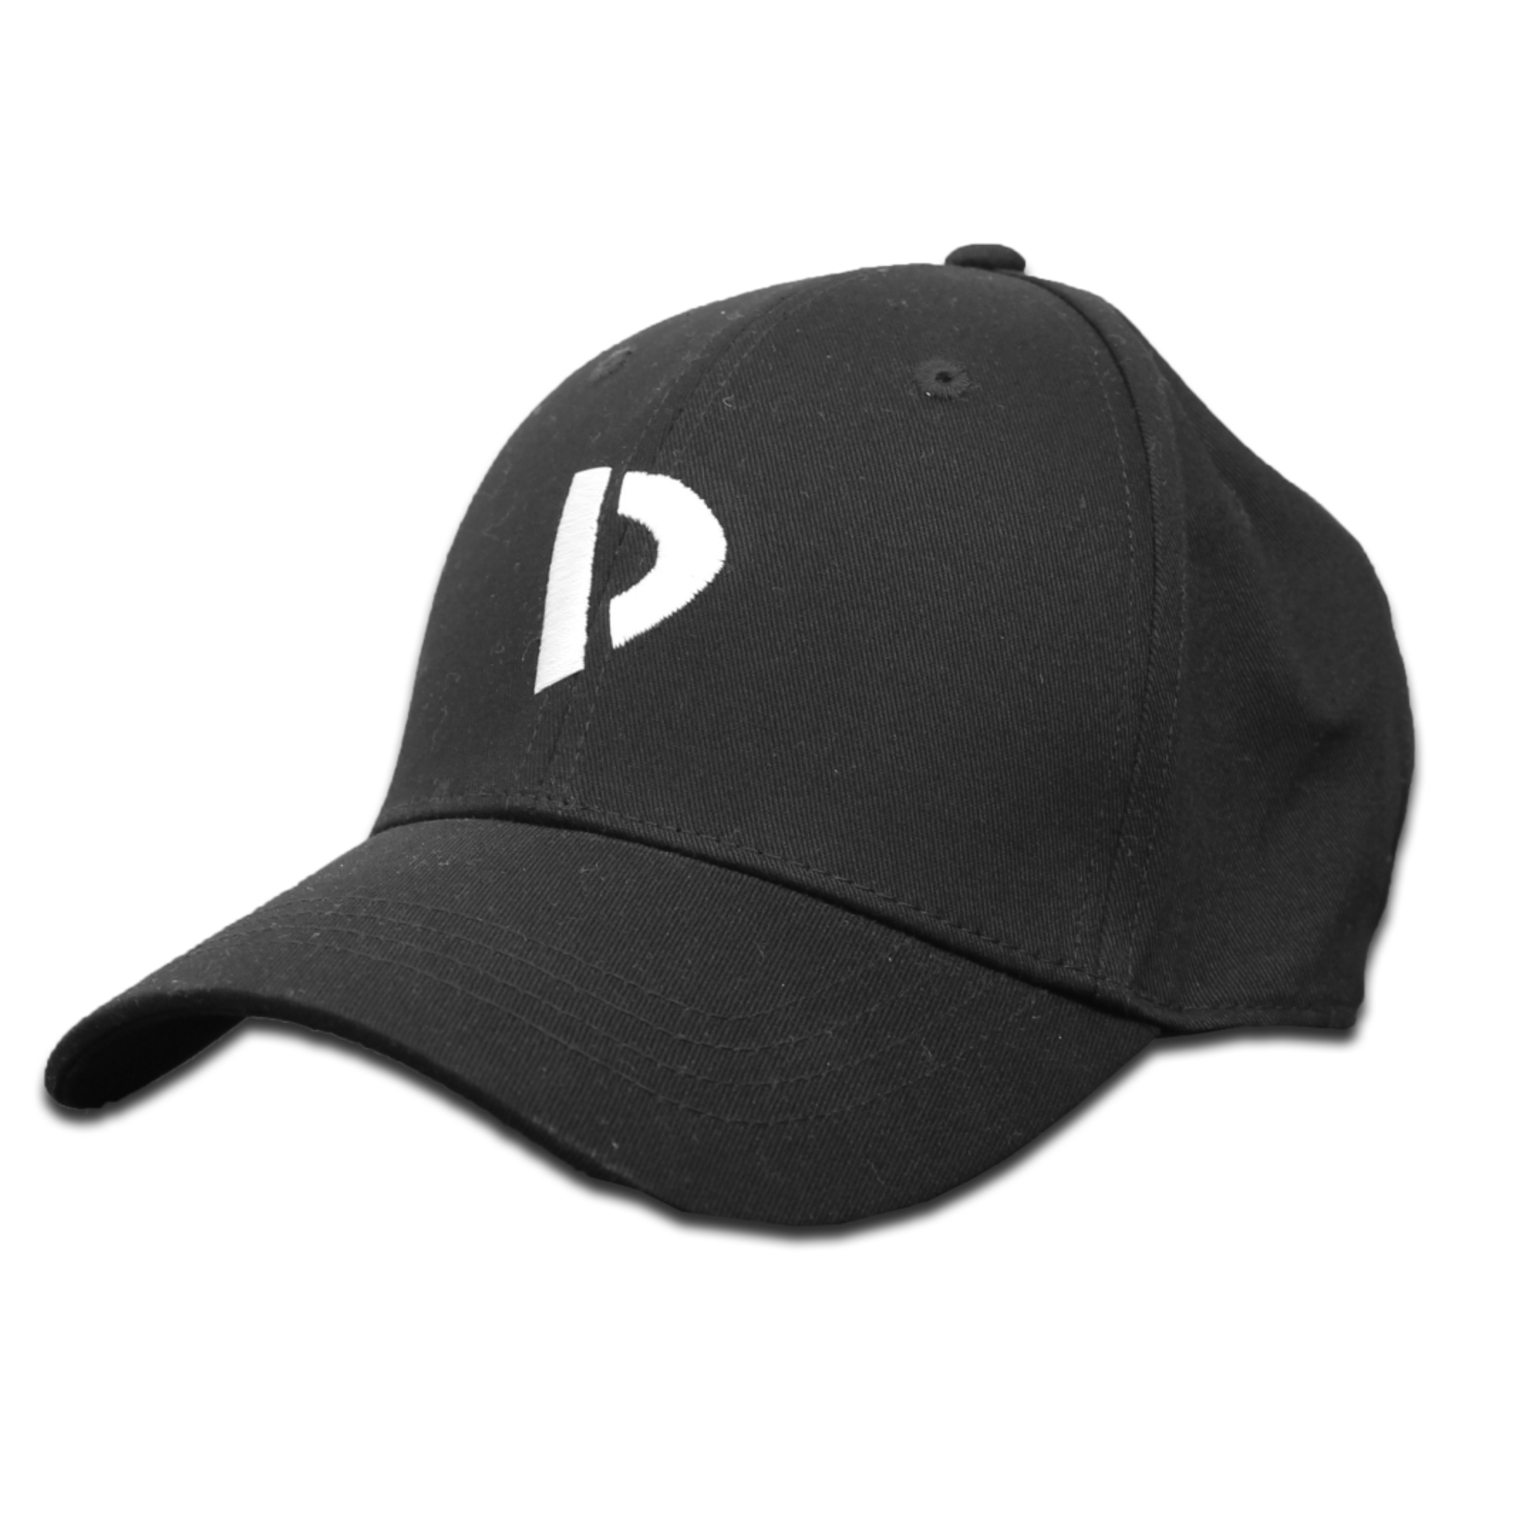 Donnay Baseball Cap - Pet Katoen - Zwart